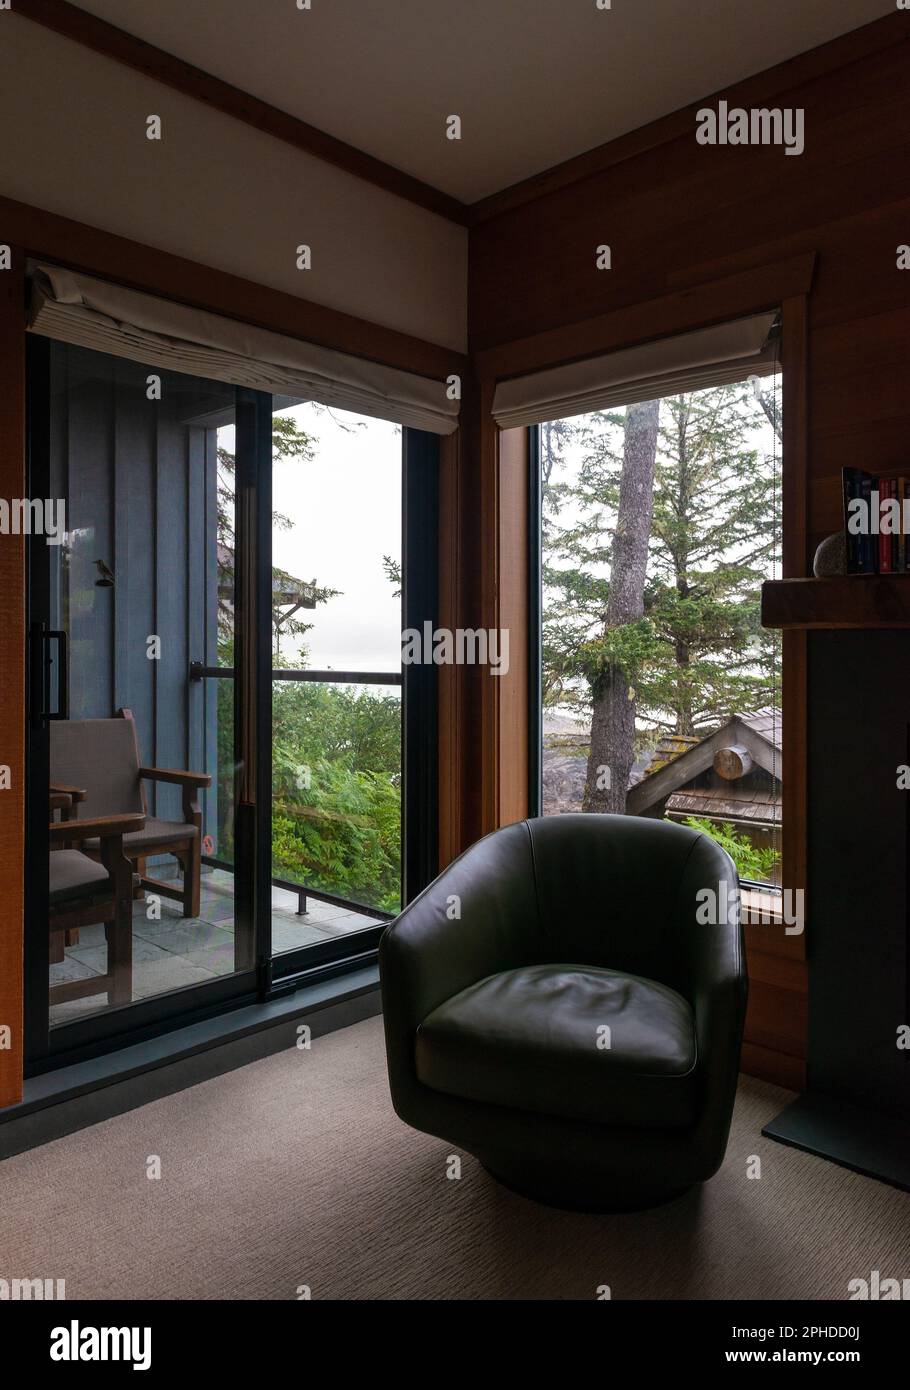 Chambre avec vue sur l'océan Pacifique dans le Wickaninnish Inn, Tofino, île de Vancouver, Colombie-Britannique, Canada. Banque D'Images